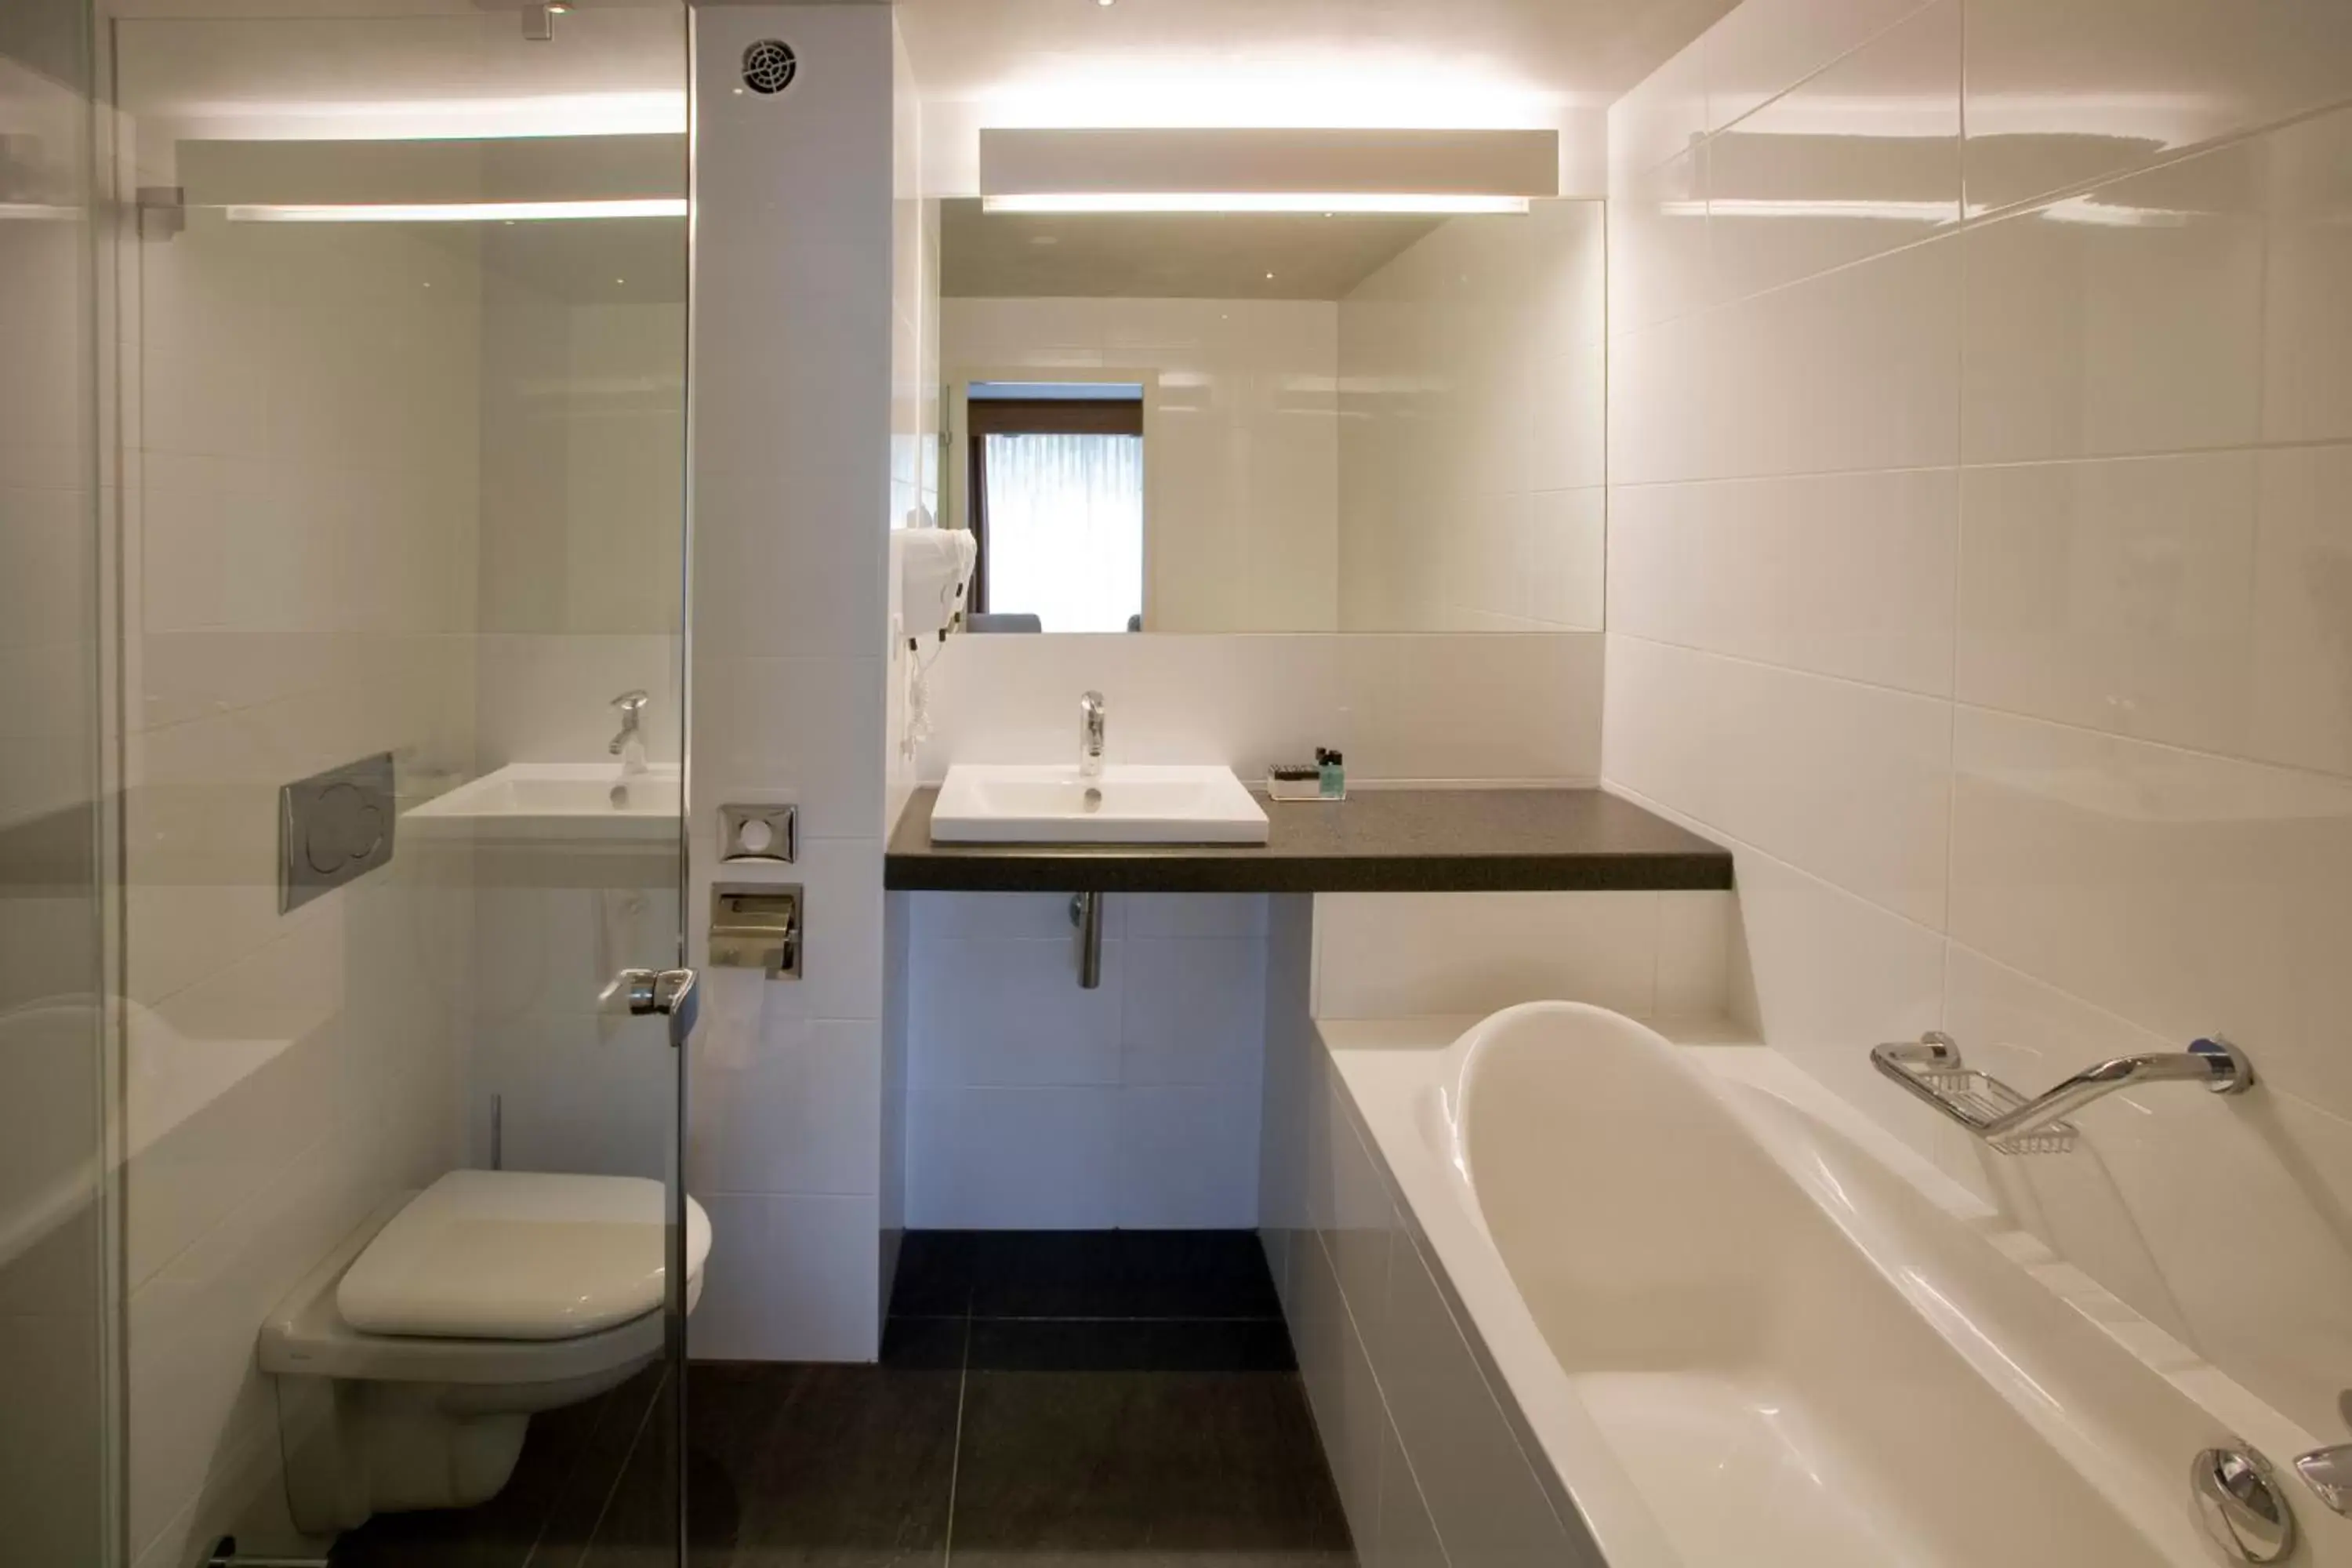 Bathroom in Van der Valk Hotel Stein Urmond